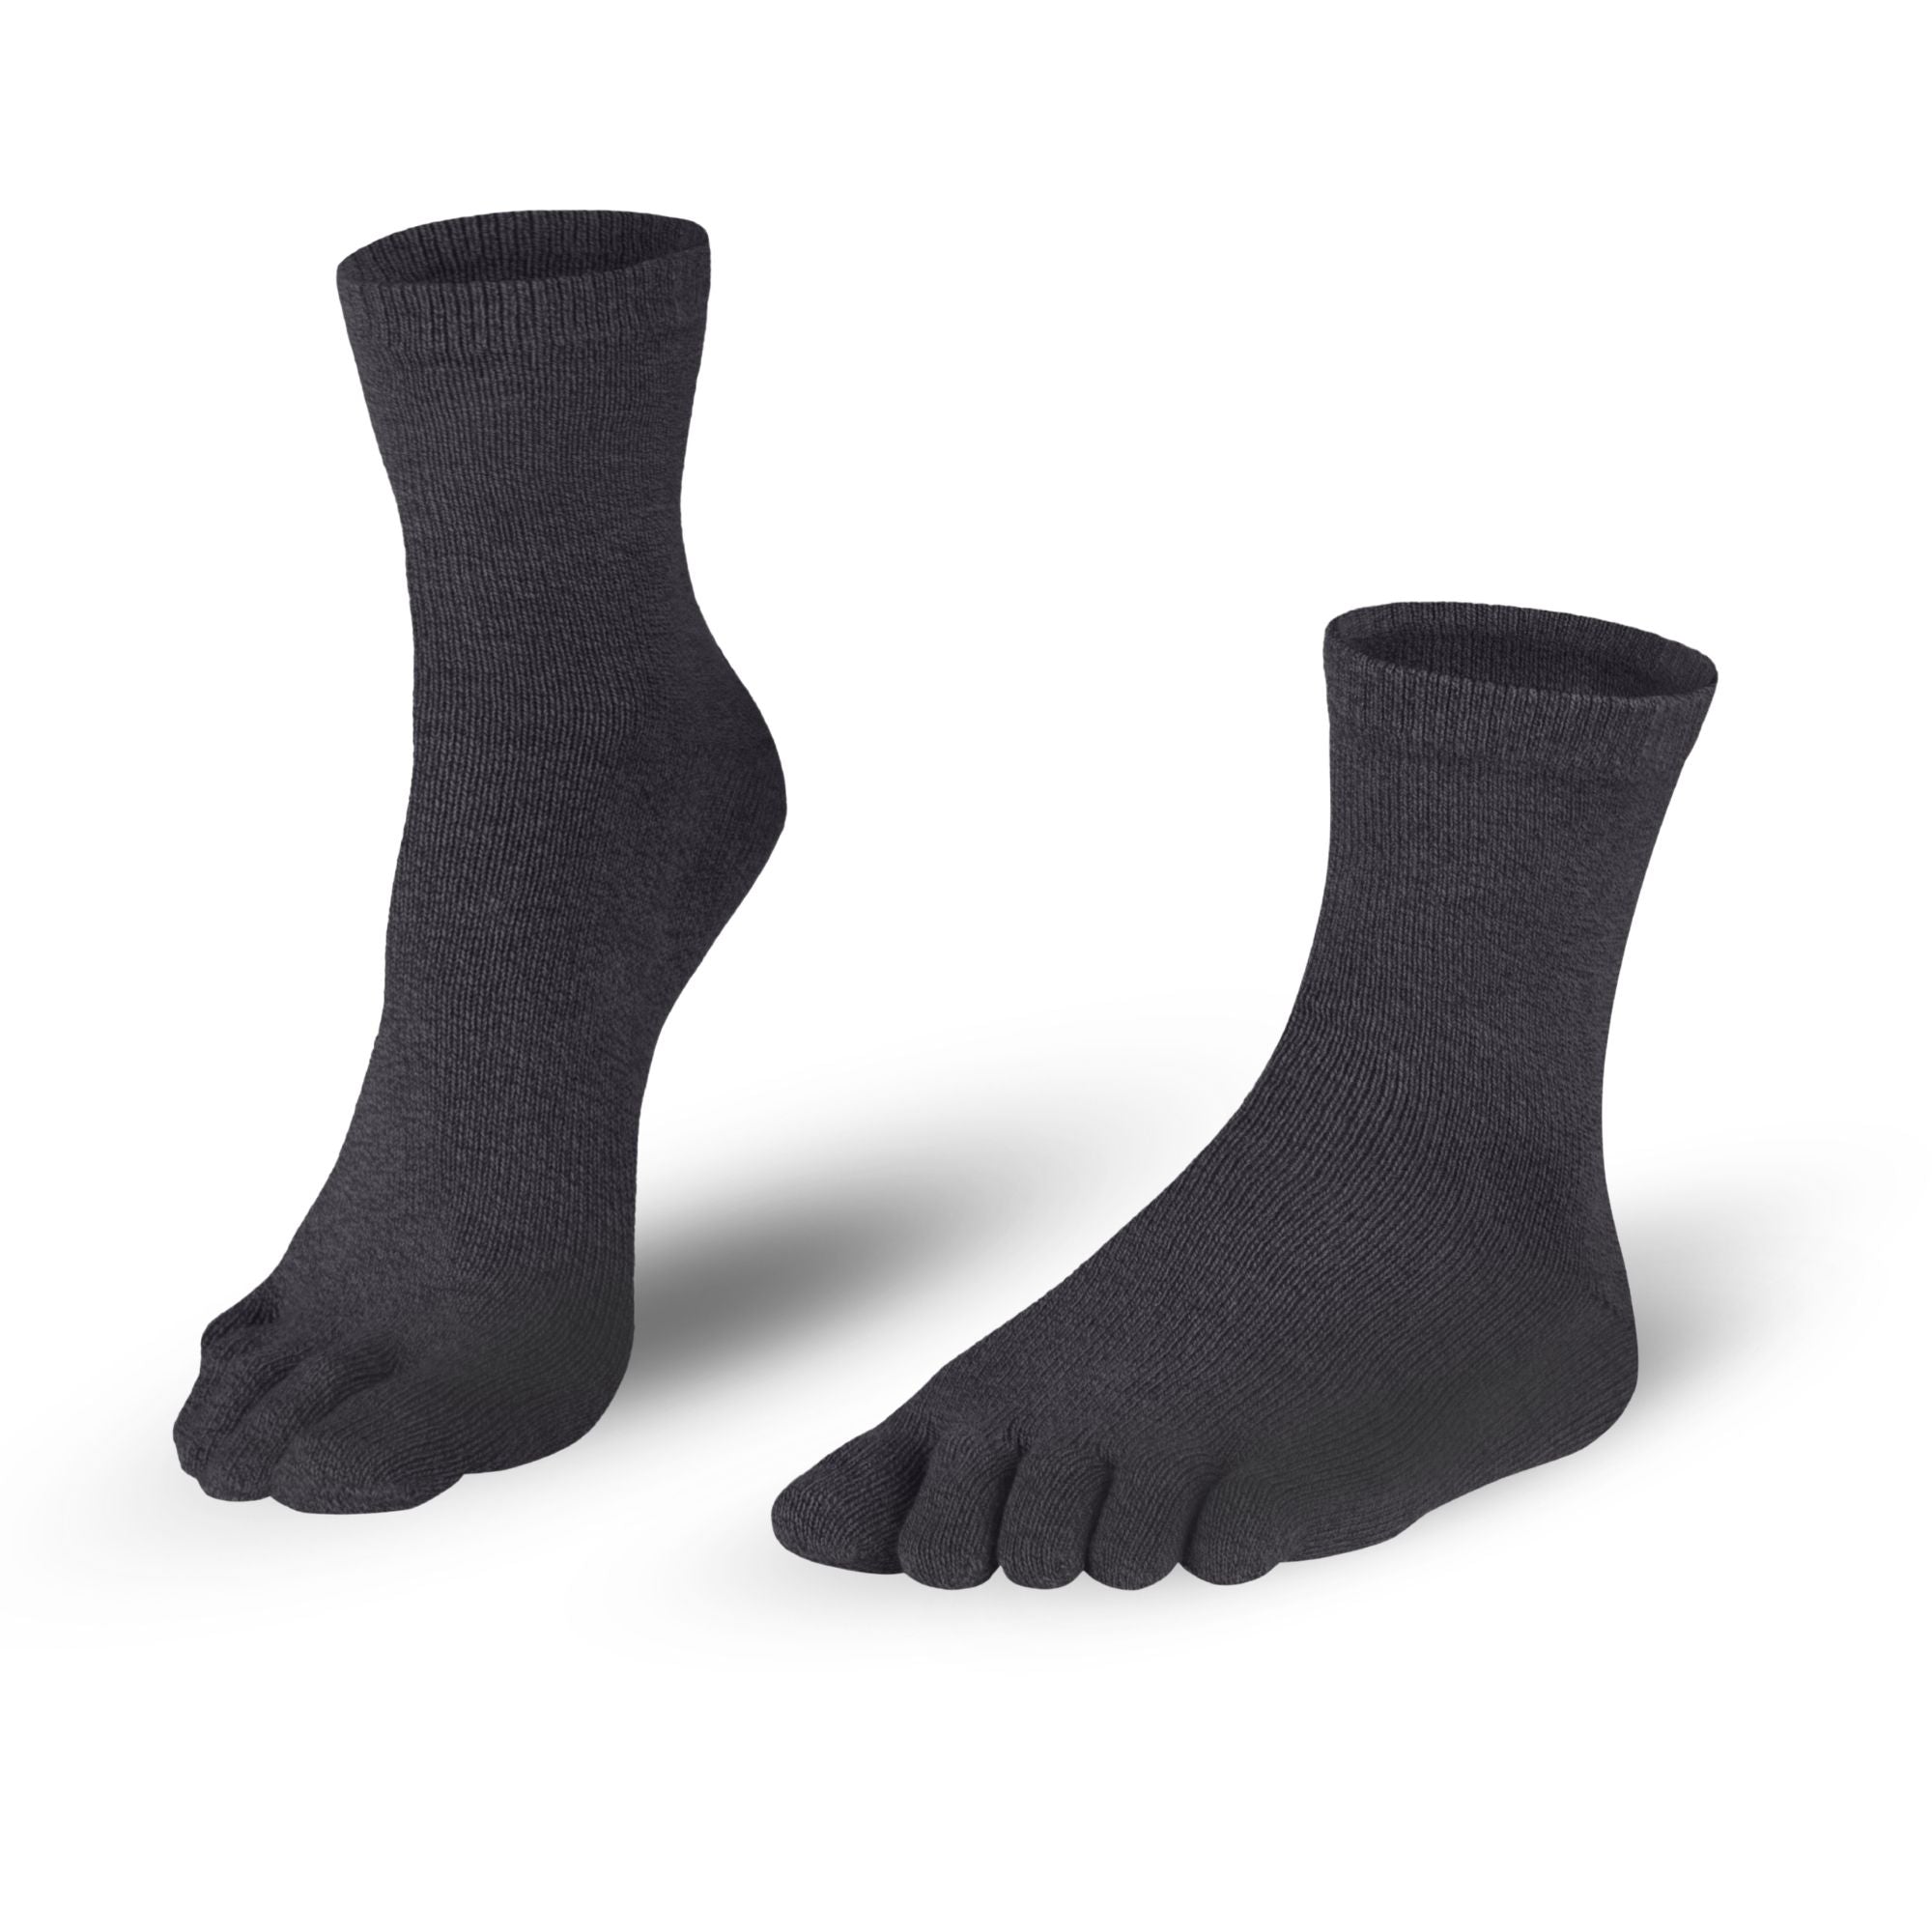 Katoenenteensokken sokken in marineblauw voor mannen en vrouwen